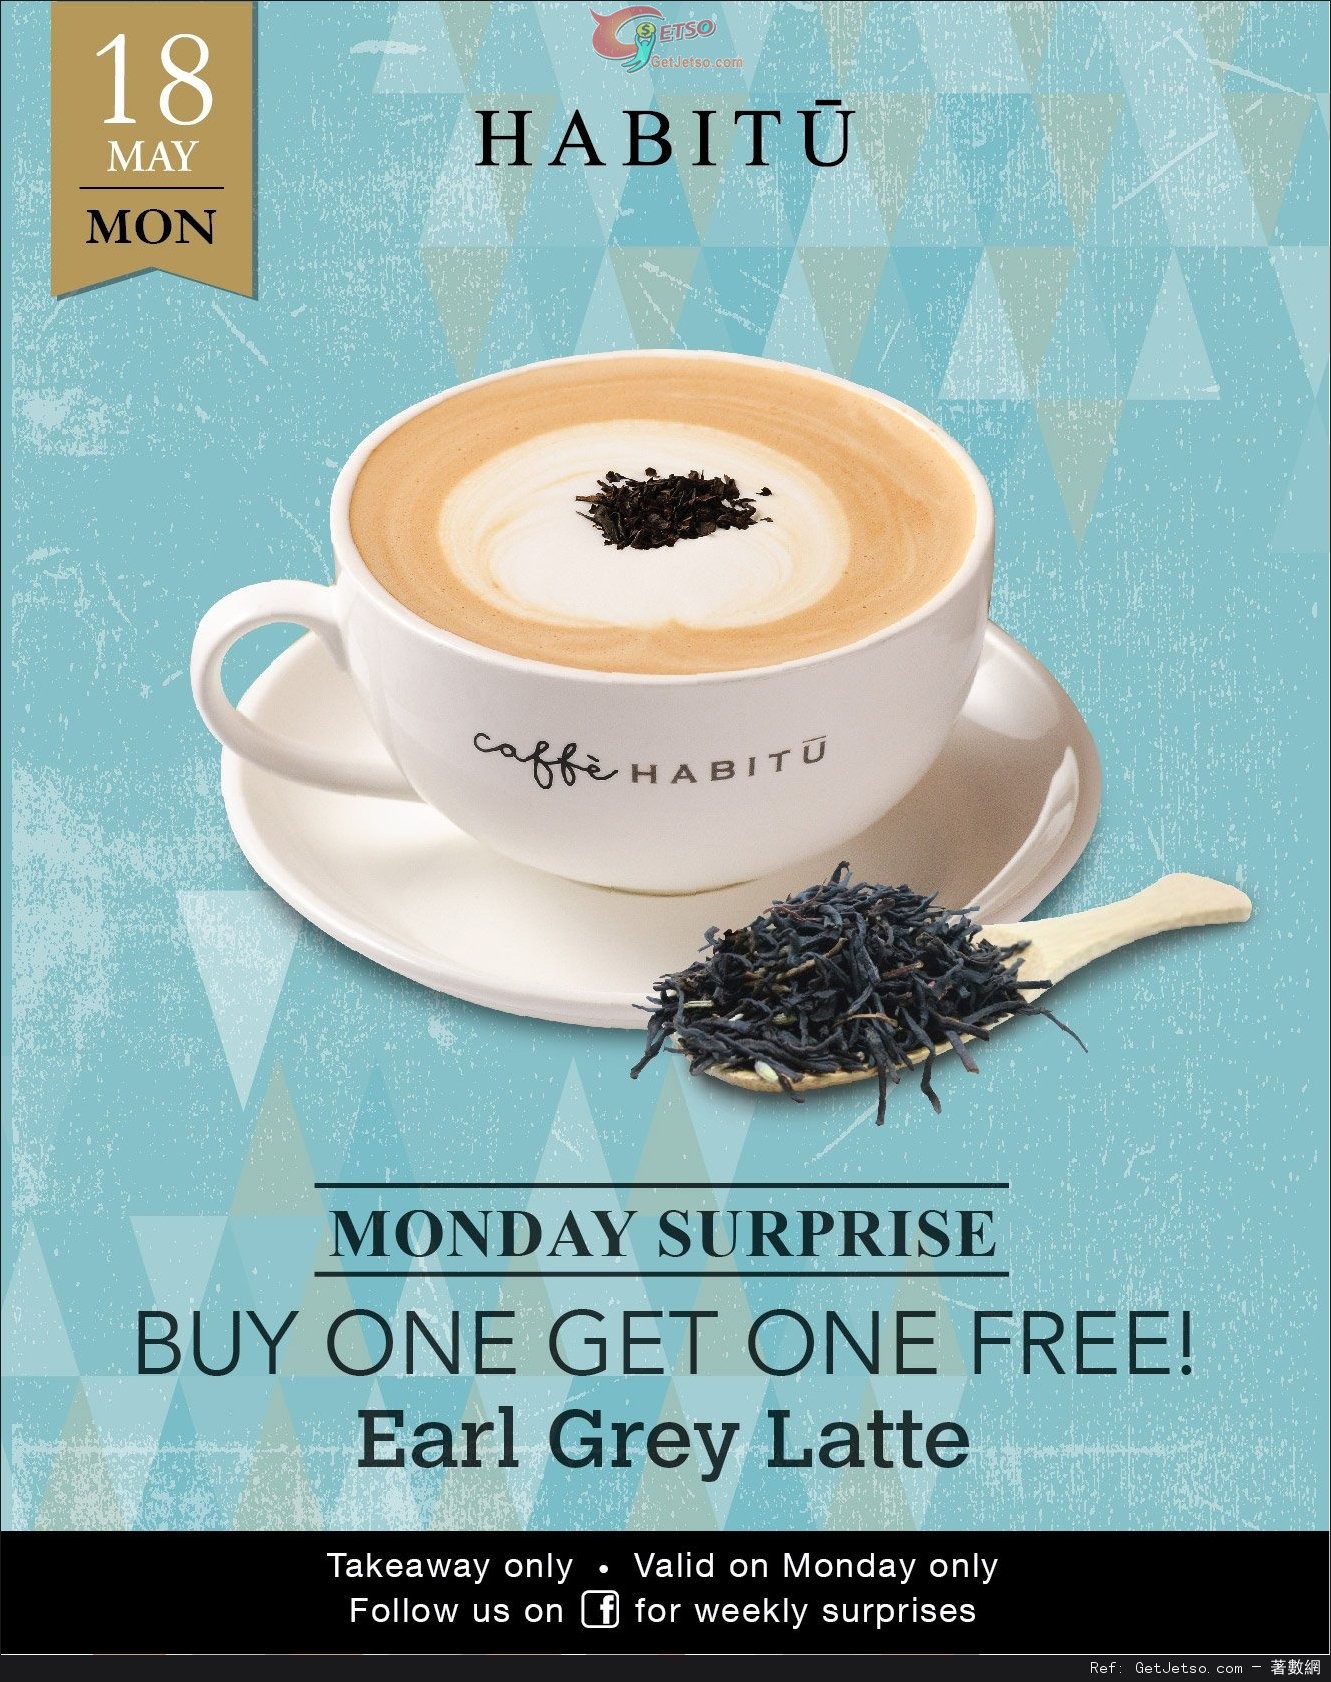 Caffe HABITU Earl Grey Latte 買1送1優惠(15年5月18日)圖片1